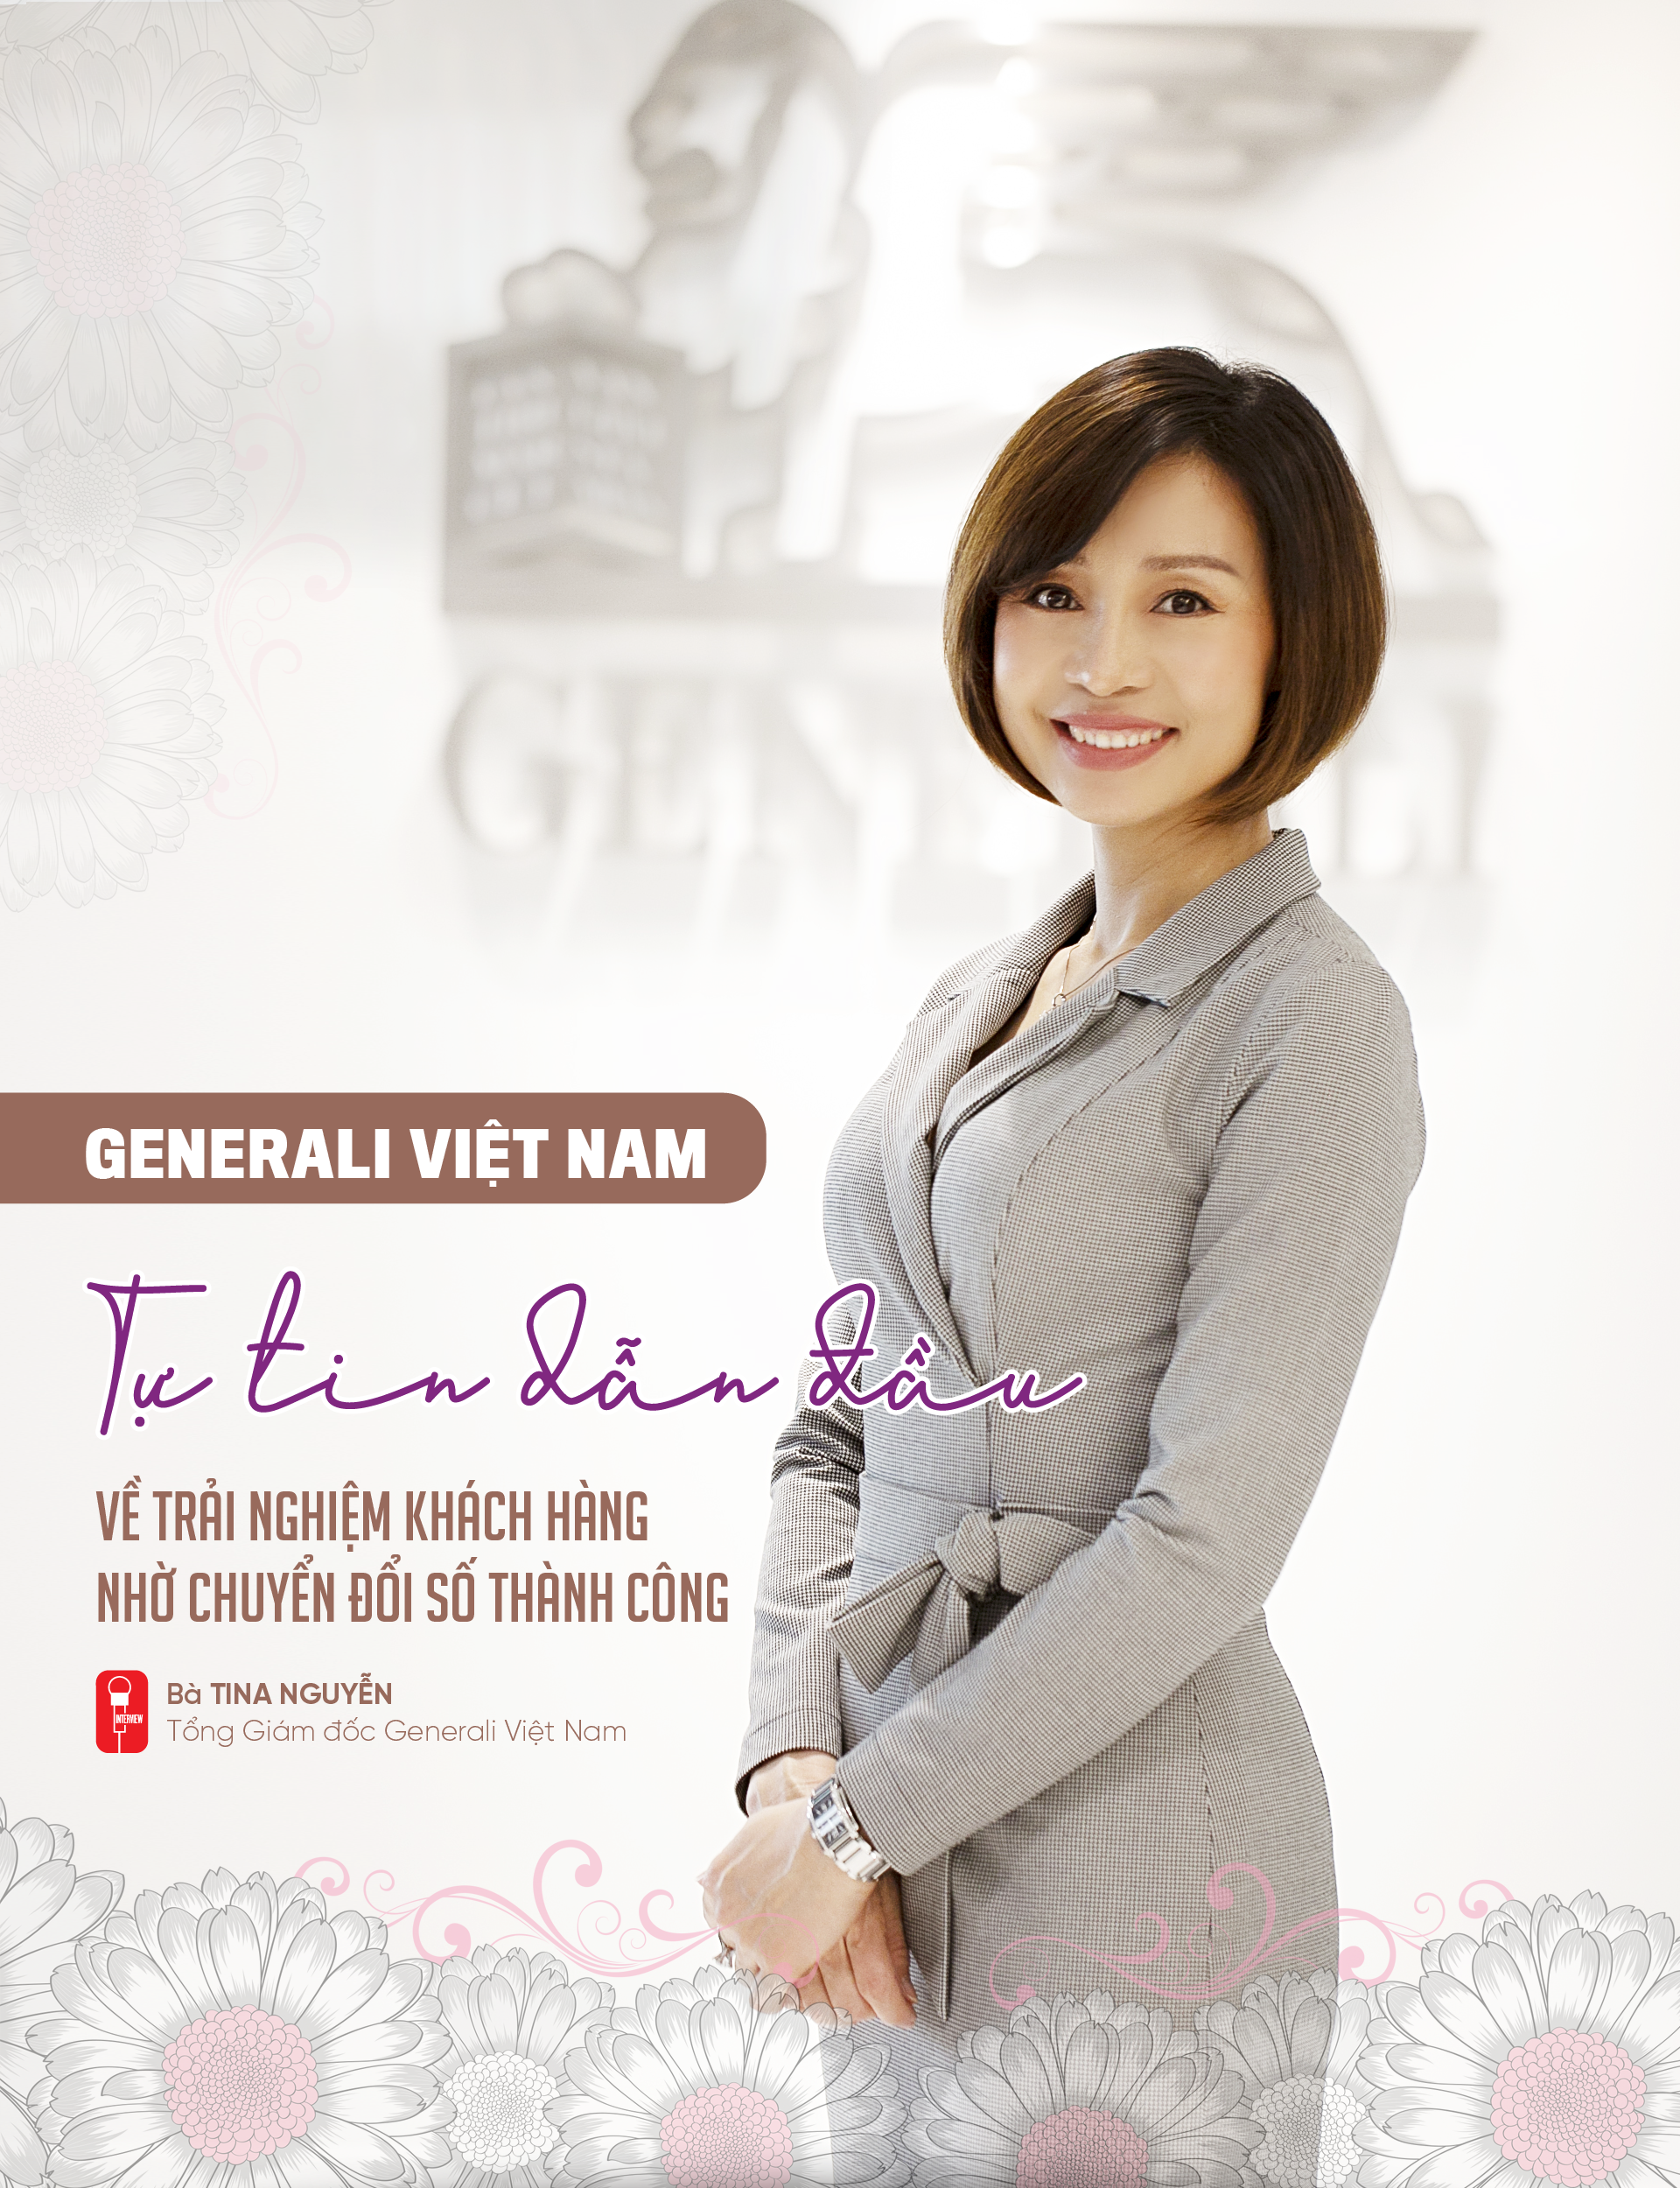 Generali Việt Nam: Tự tin dẫn đầu về trải nghiệm khách hàng nhờ chuyển đổi số thành công - Ảnh 1